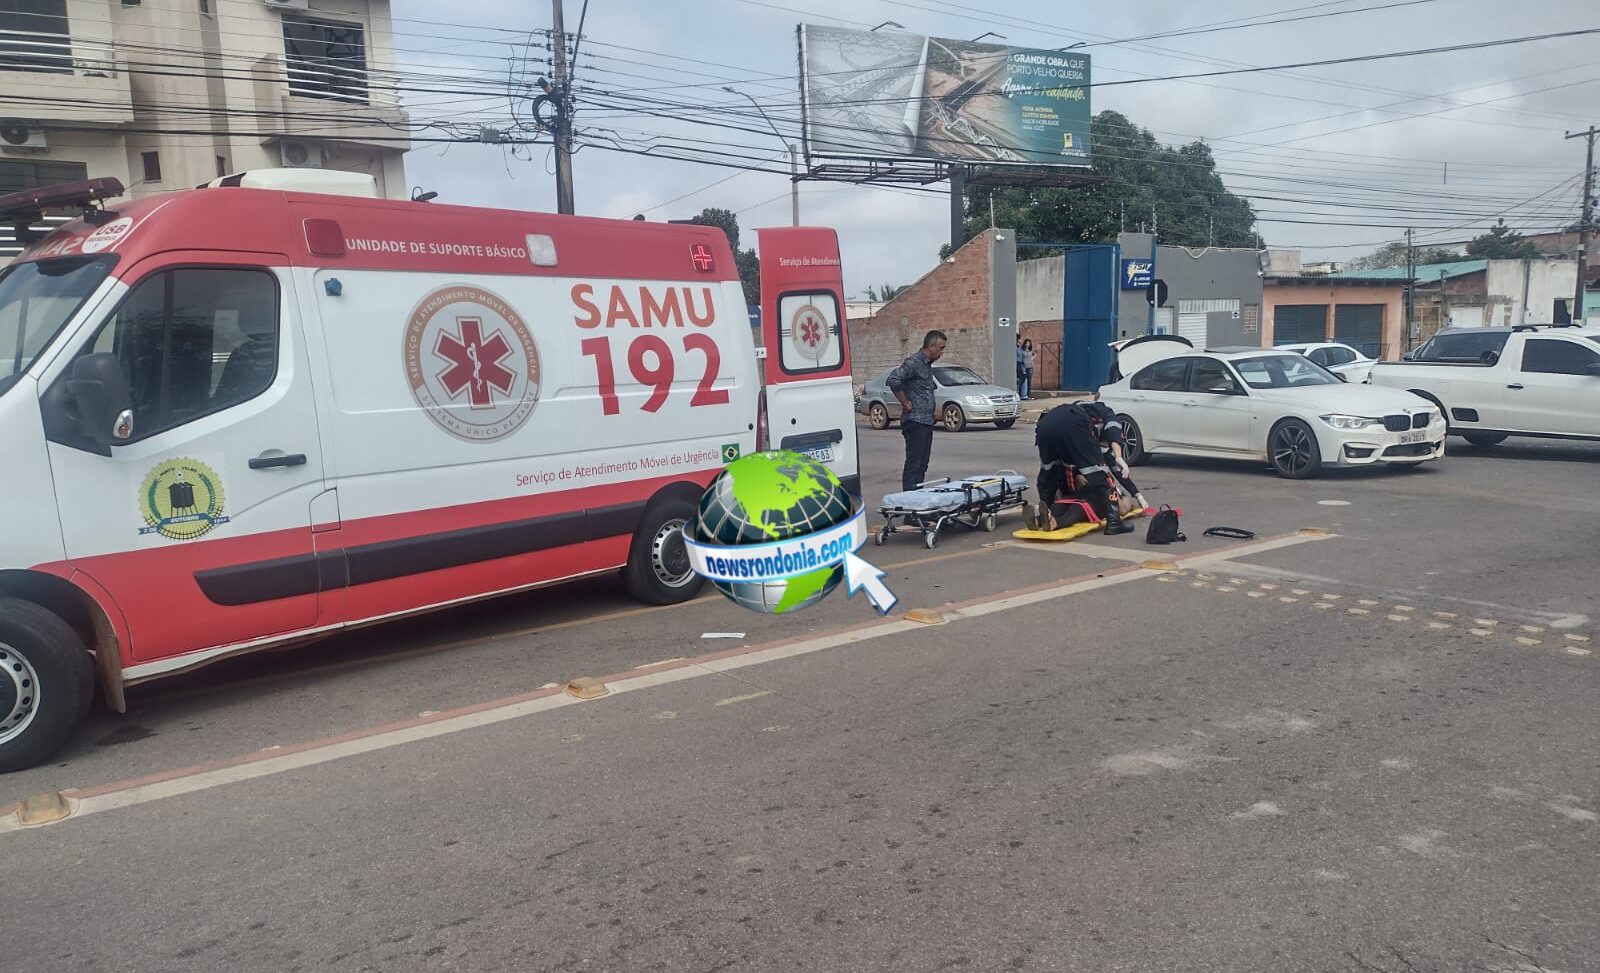 URGENTE: Mulher gestante fica ferida em acidente com BMW na frente do Samu